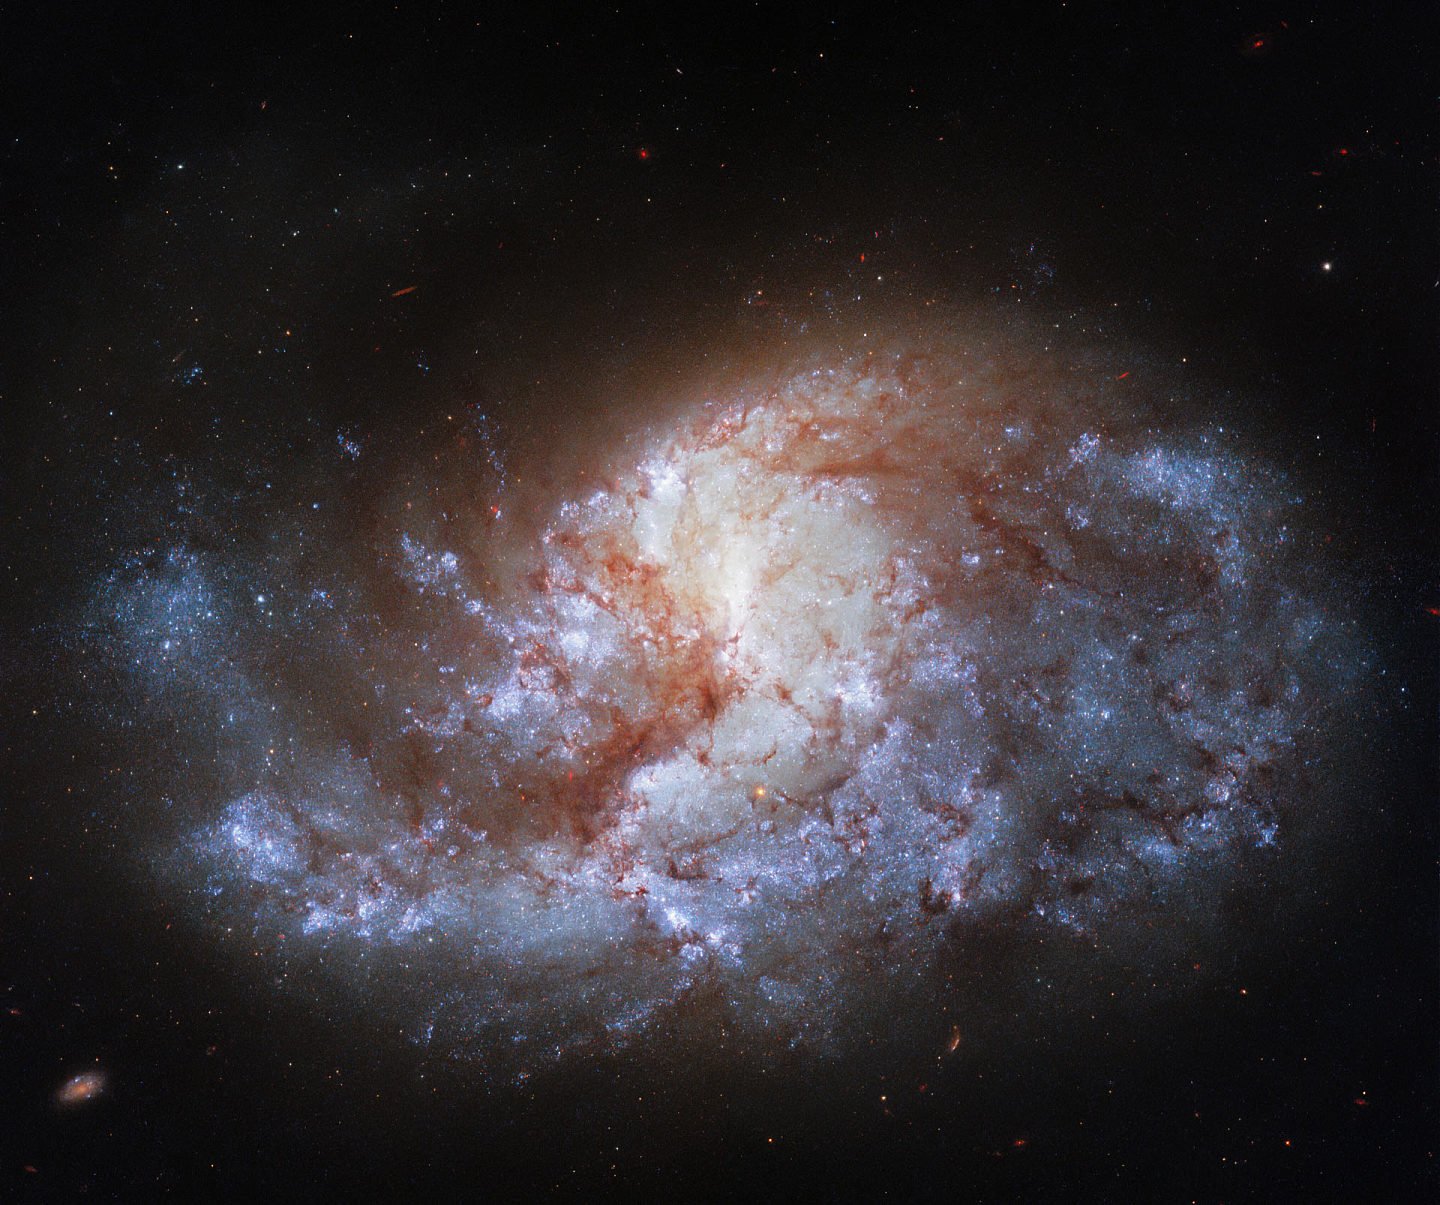 哈勃望远镜捕捉到位于天炉座螺旋星系NGC 1385图像：如宝石般明亮 - 1